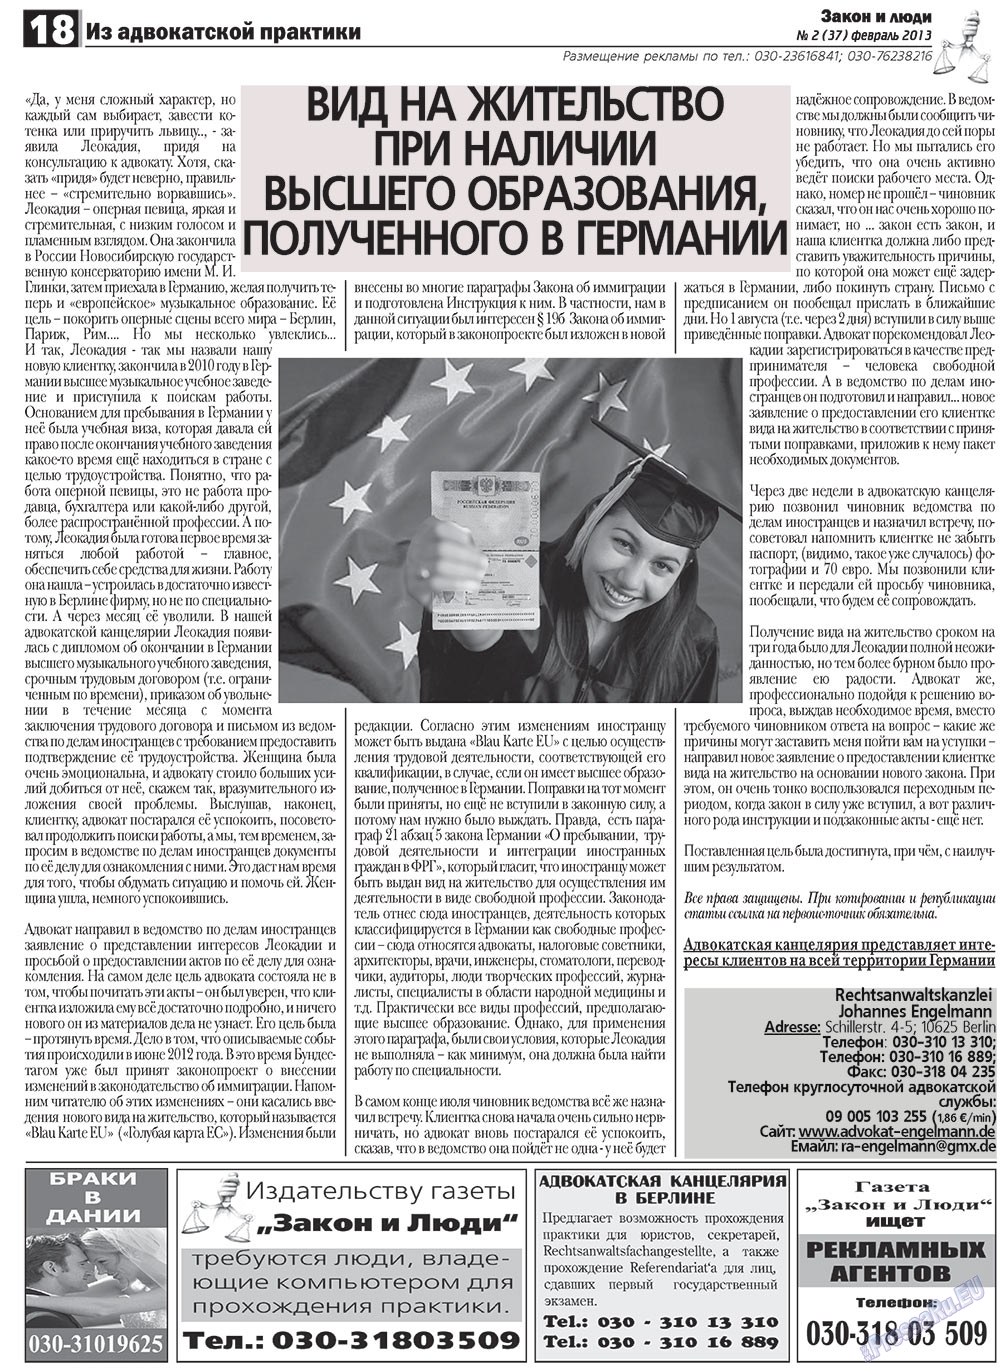 Закон и люди, газета. 2013 №2 стр.18